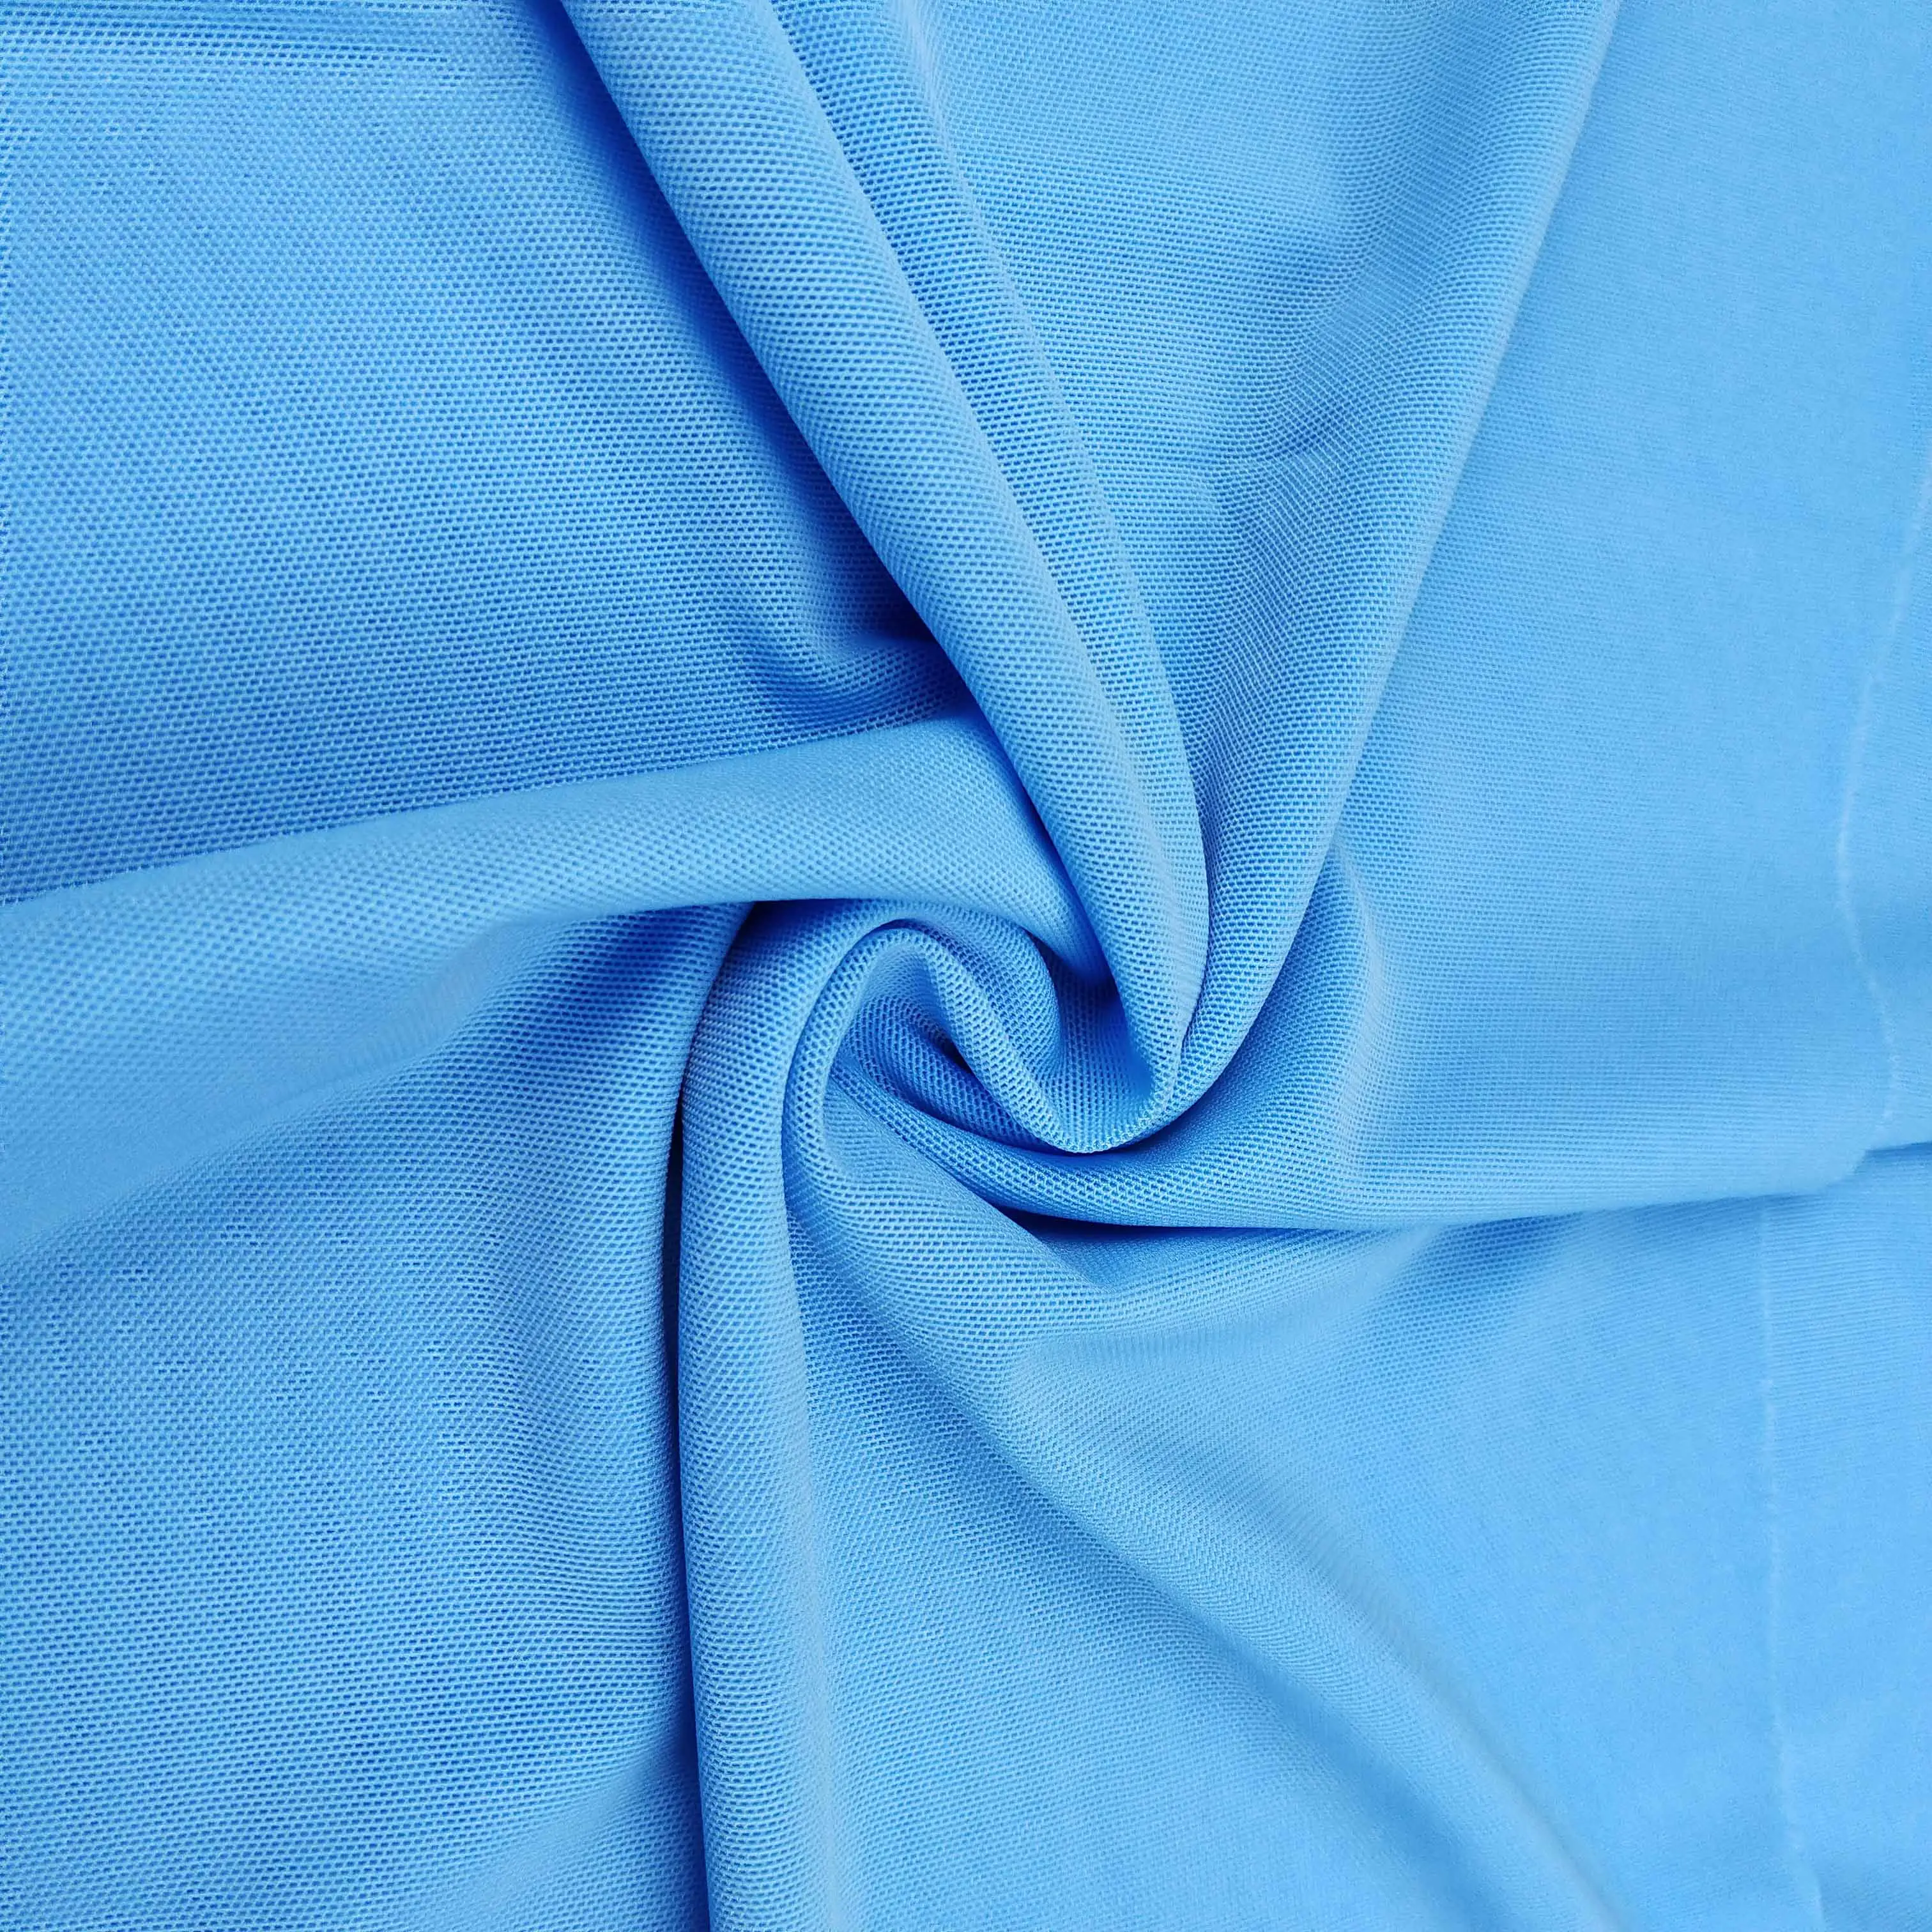 Moda poliamida elástica tecido de tule para lingerie, roupa íntima, roupas, vestuários